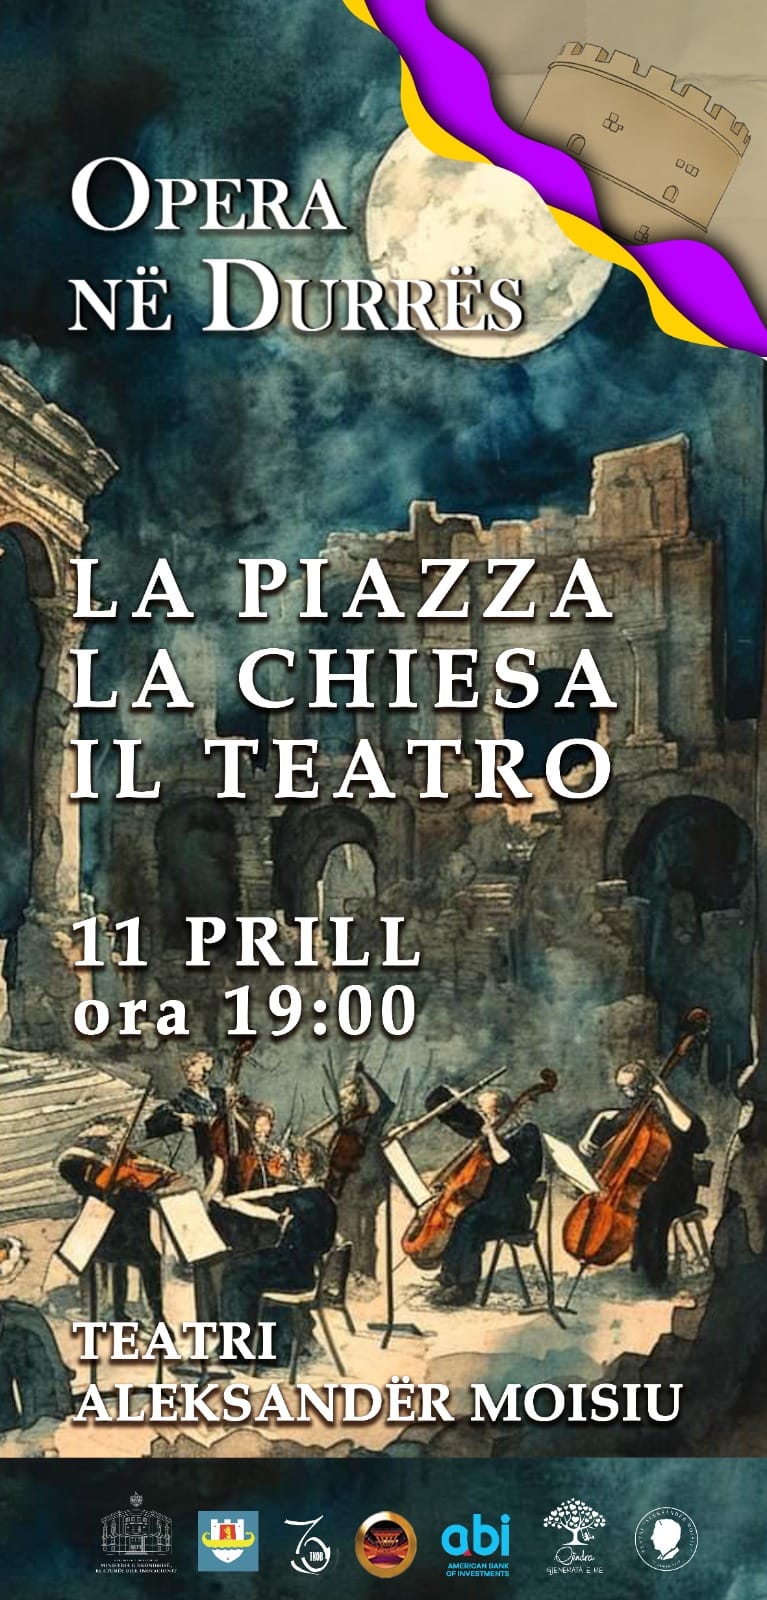 Opera në Durrës, “La Piazza, la Chiesa, il Teatro” premierë të enjten